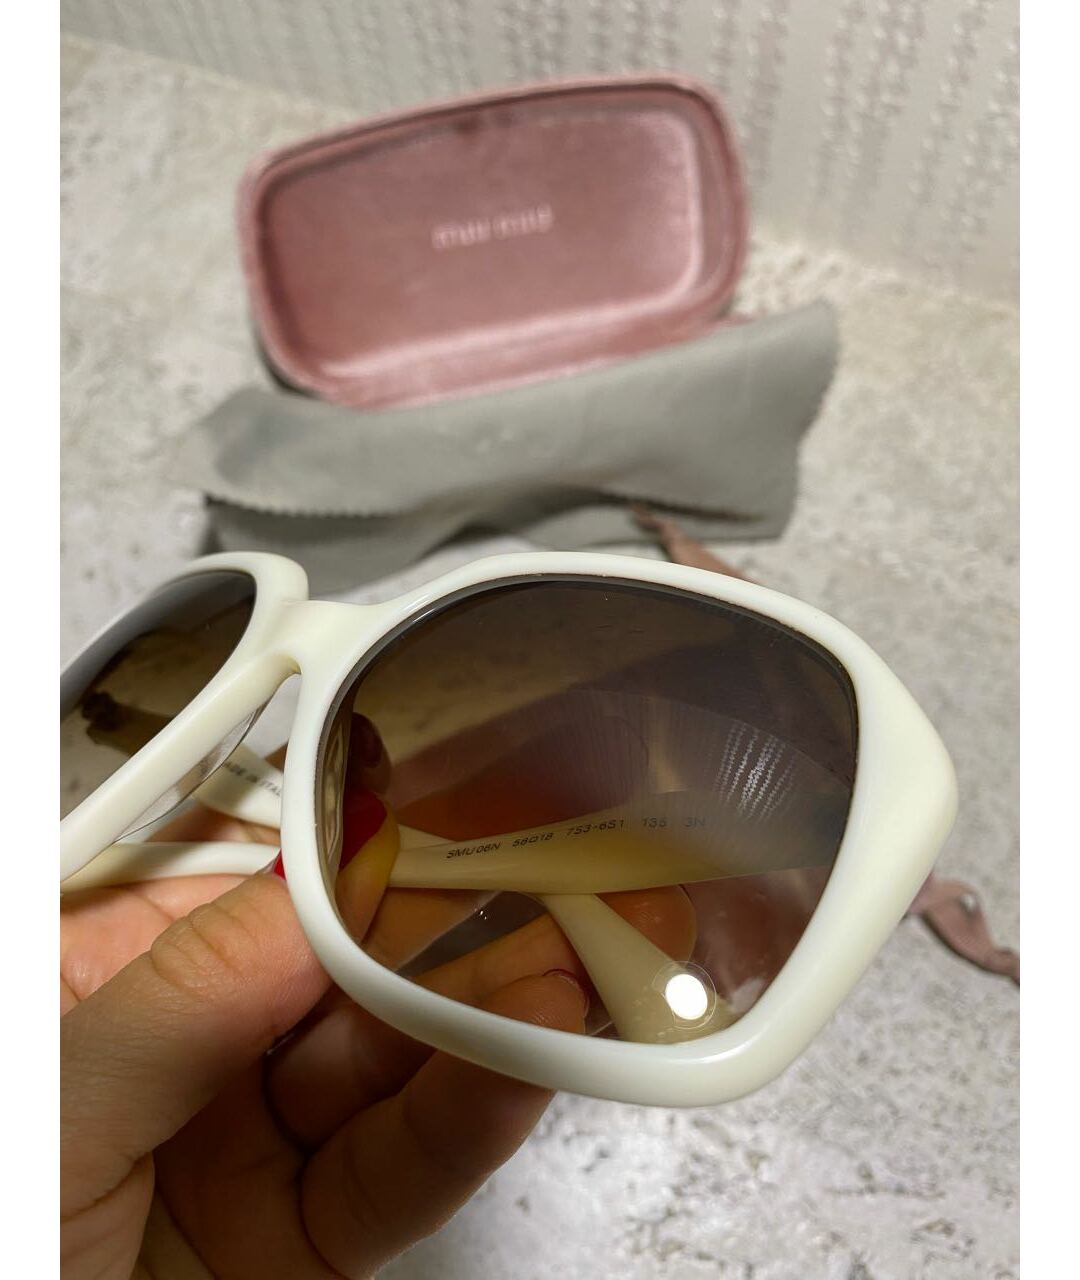 MIU MIU Белые пластиковые солнцезащитные очки, фото 4